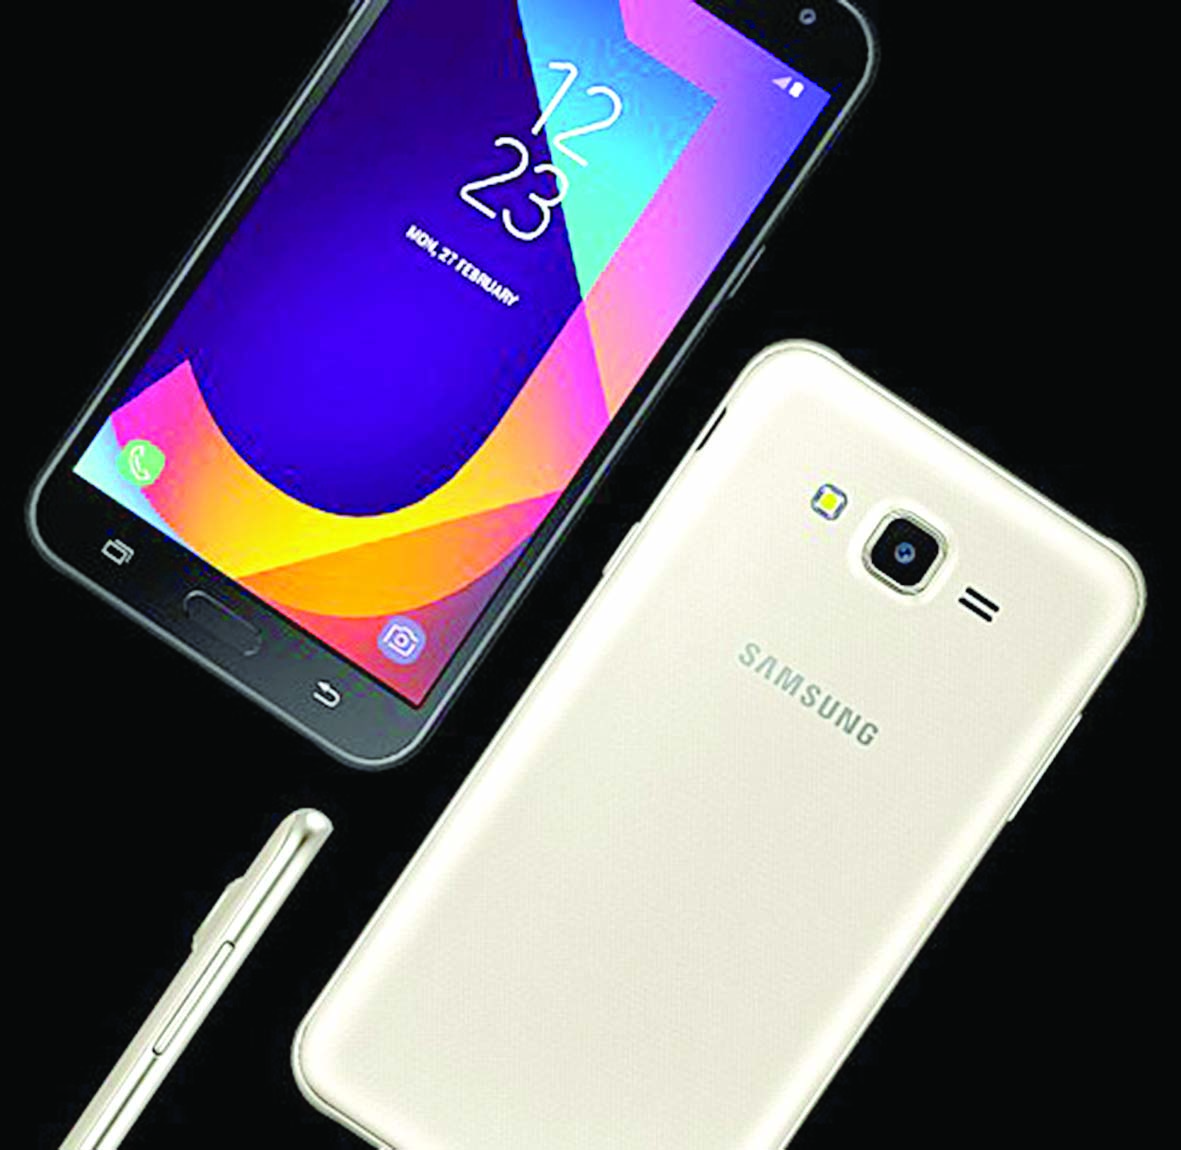 سامسونج تطلق هاتفها الجديد Galaxy J7 Nxt